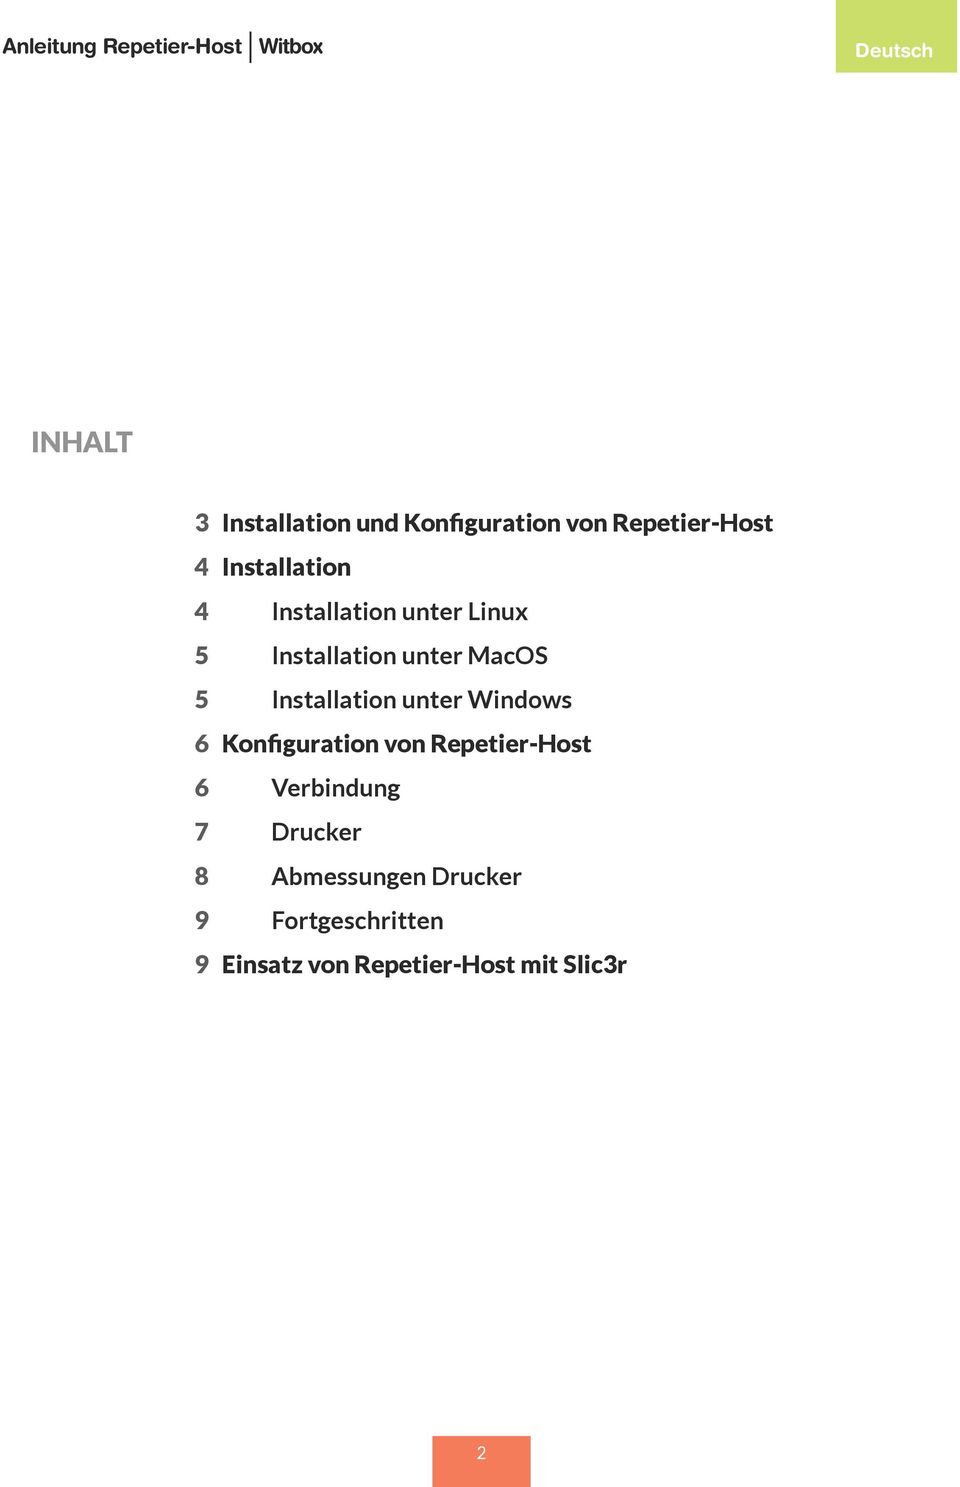 MacOS 5 Installation unter Windows 6 Konfiguration von Repetier-Host 6 Verbindung